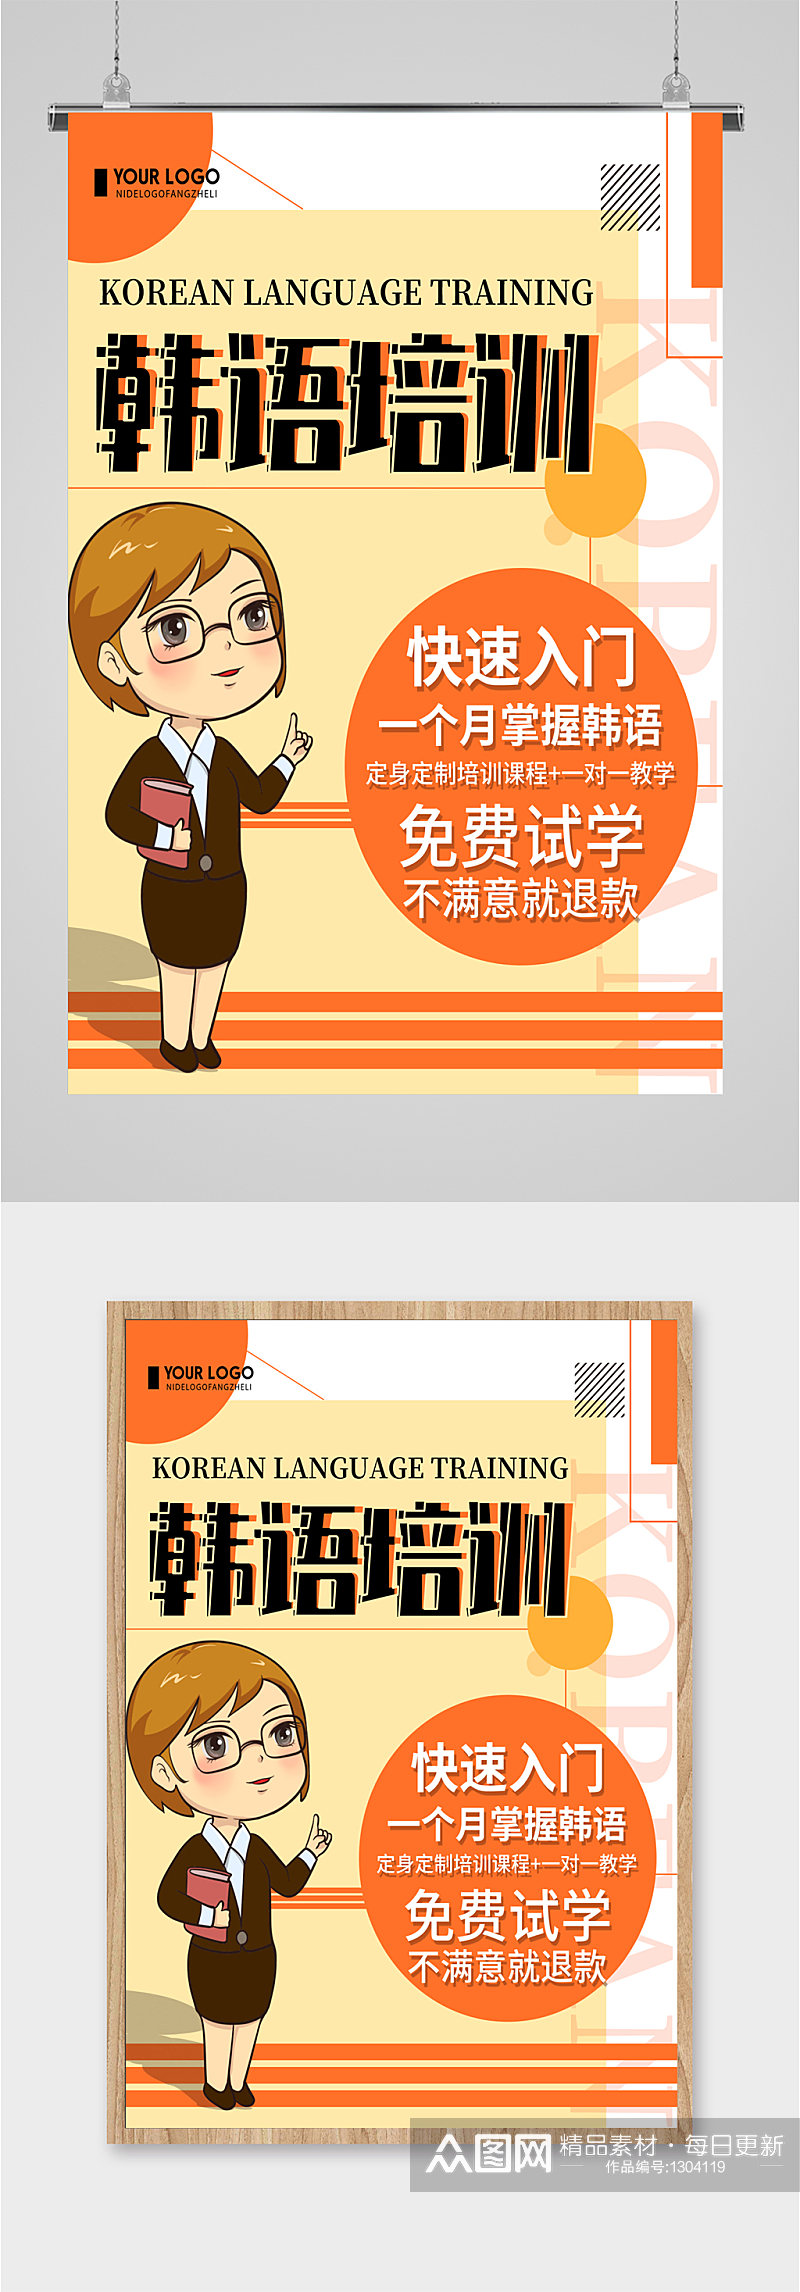 韩语培训班教学招生海报素材